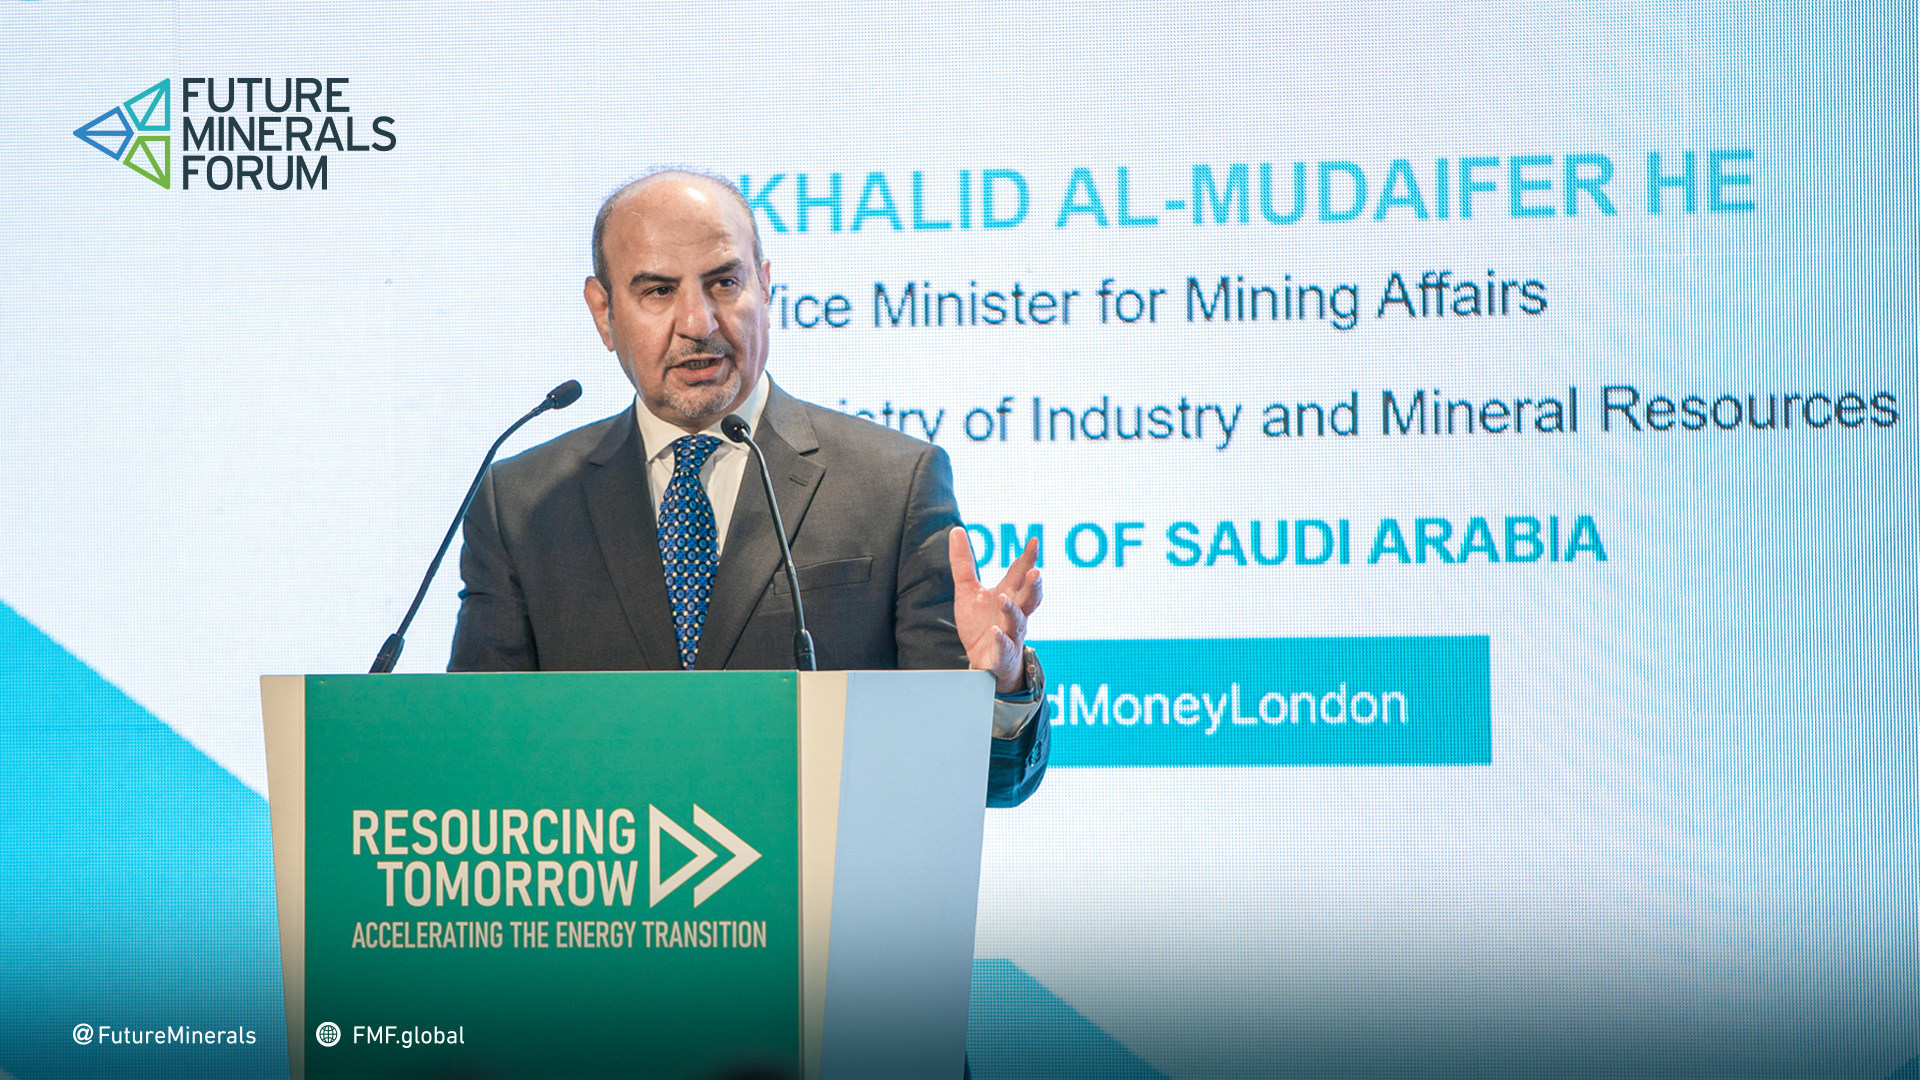 Le ministère saoudien de l'Industrie et des Ressources minérales affirme lors de la conférence à Londres : « L'Arabie saoudite deviendra un leader dans la production durable de métaux, au profit de la transition ve